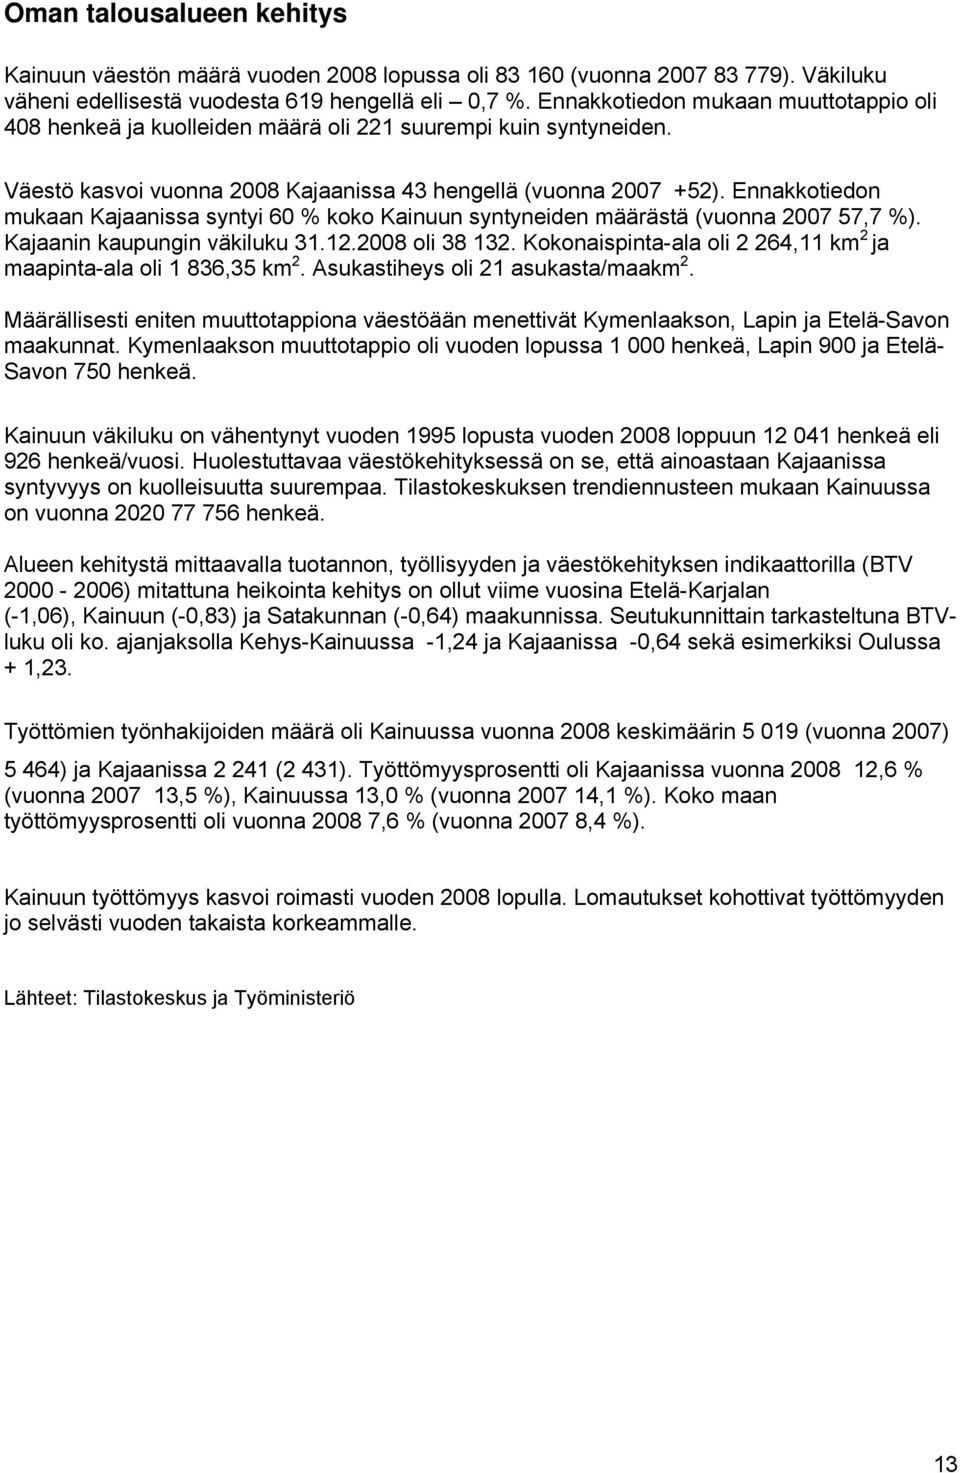 Ennakkotiedon mukaan Kajaanissa syntyi 60 % koko Kainuun syntyneiden määrästä (vuonna 2007 57,7 %). Kajaanin kaupungin väkiluku 31.12.2008 oli 38 132.